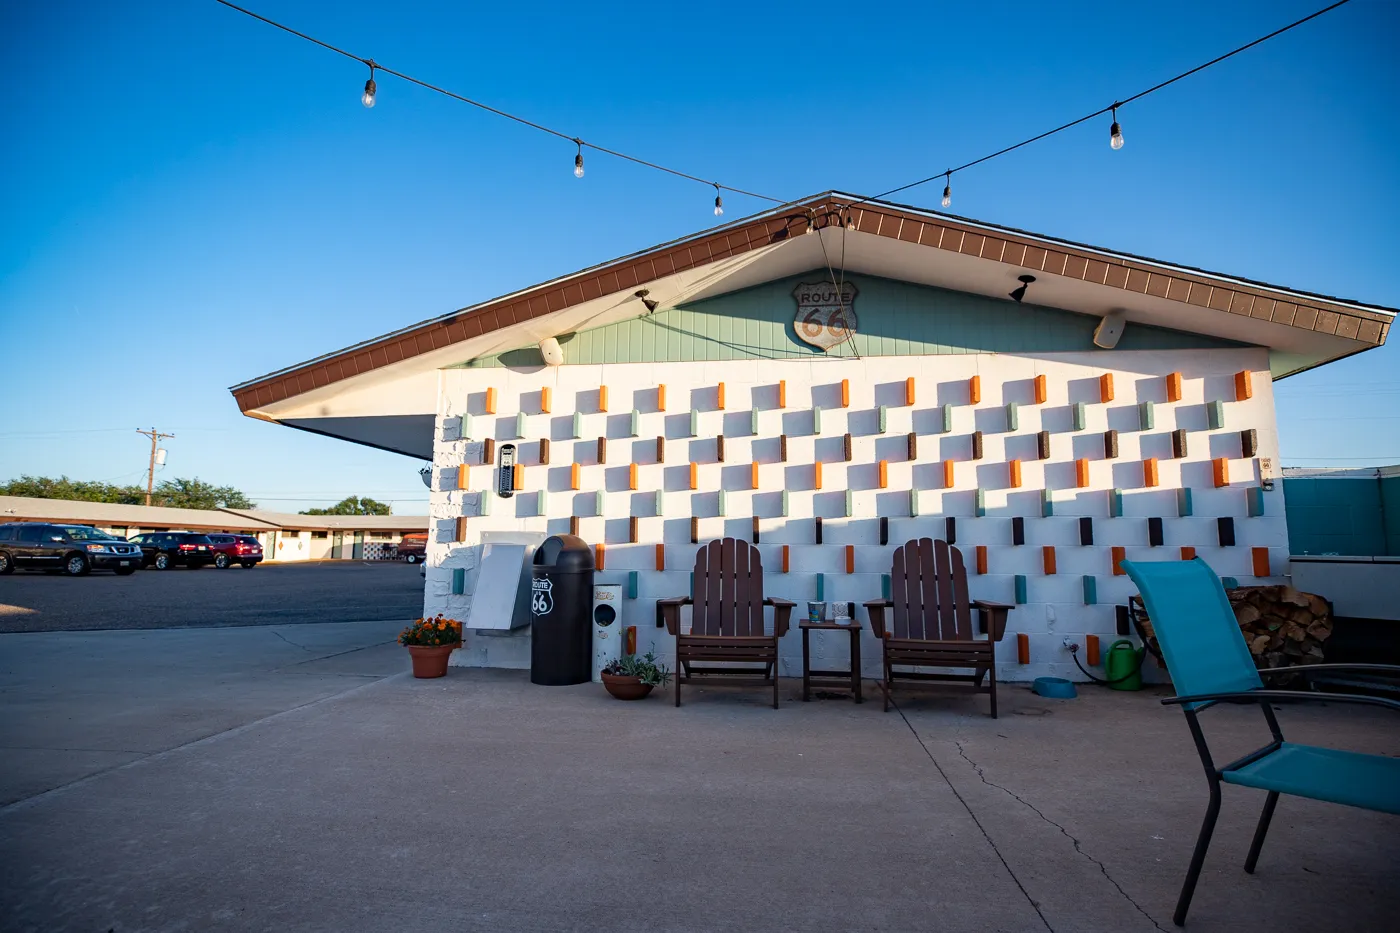 Courtyard and Burma Shave Murals at Motel Safari in Tucumcari, New Mexico (Route 66 Motel)